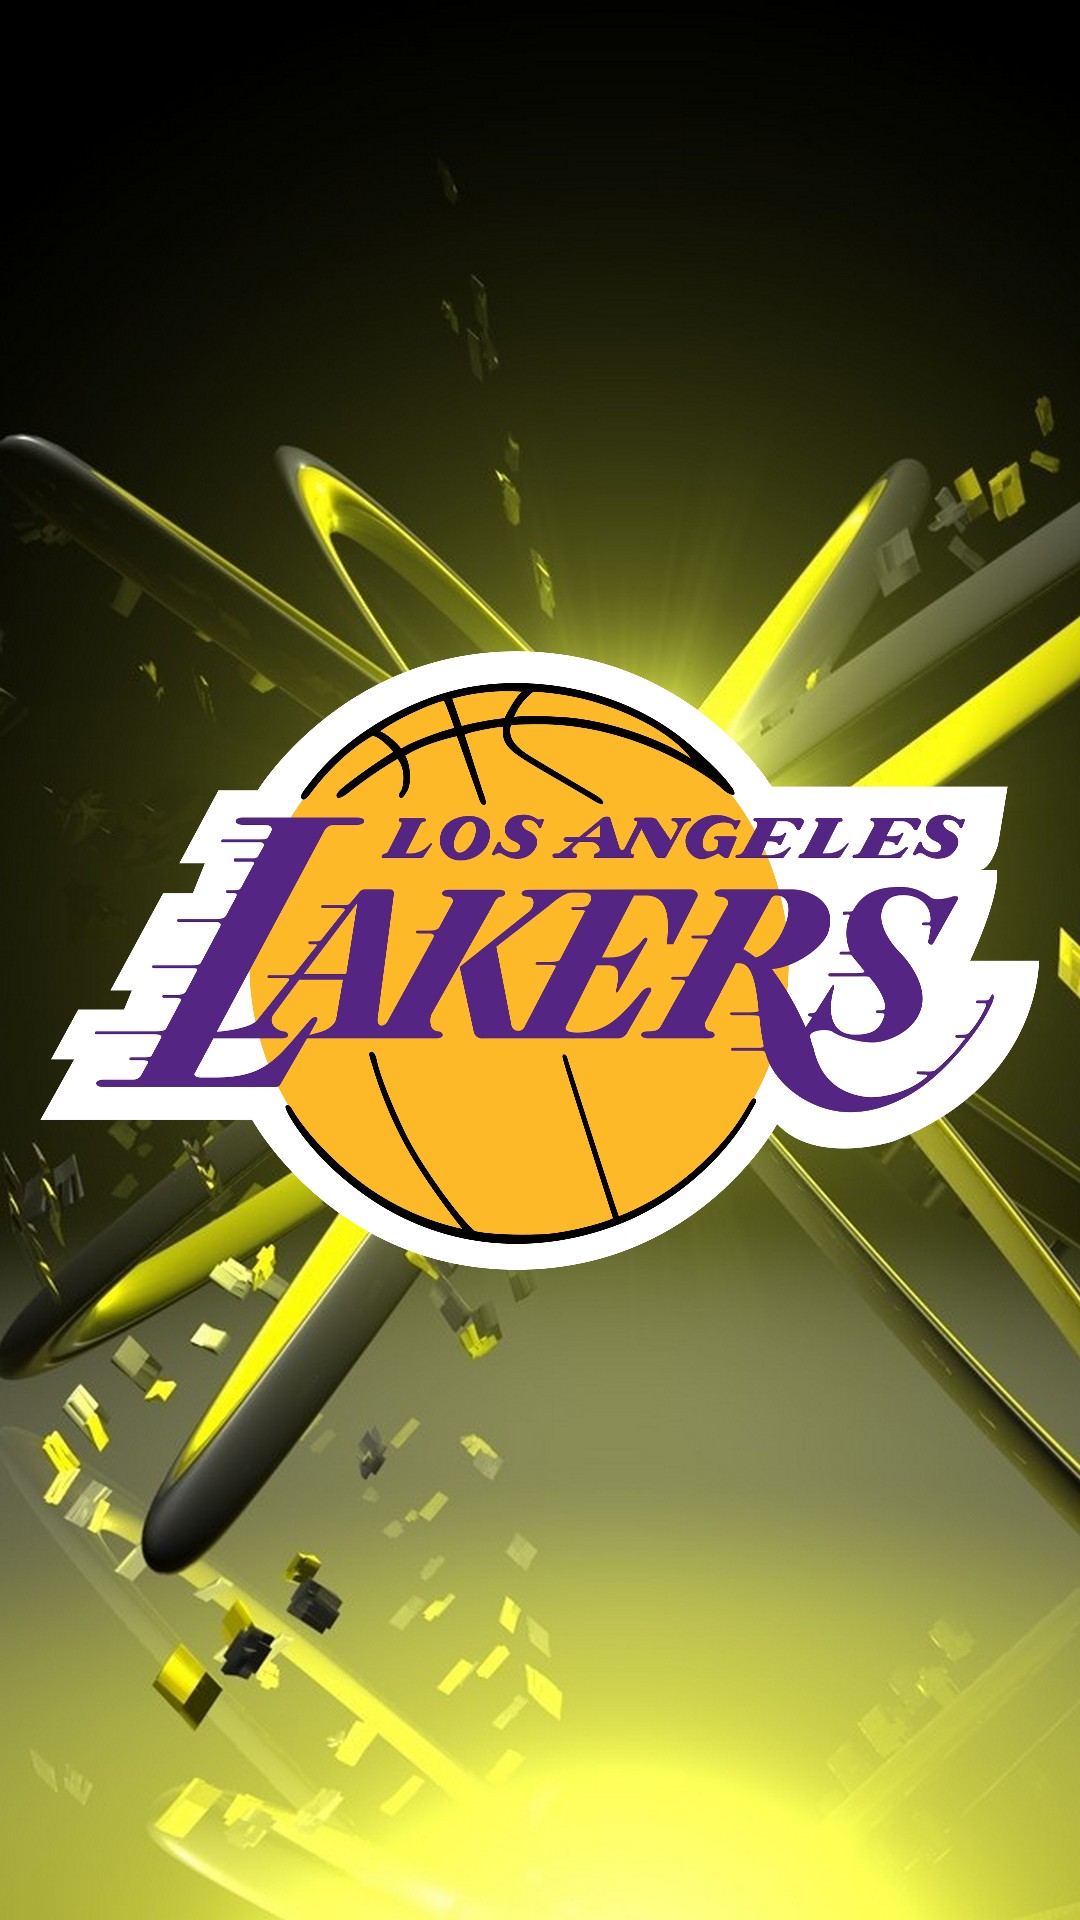 56+ Lakers 2020 Wallpapers on WallpaperSafari